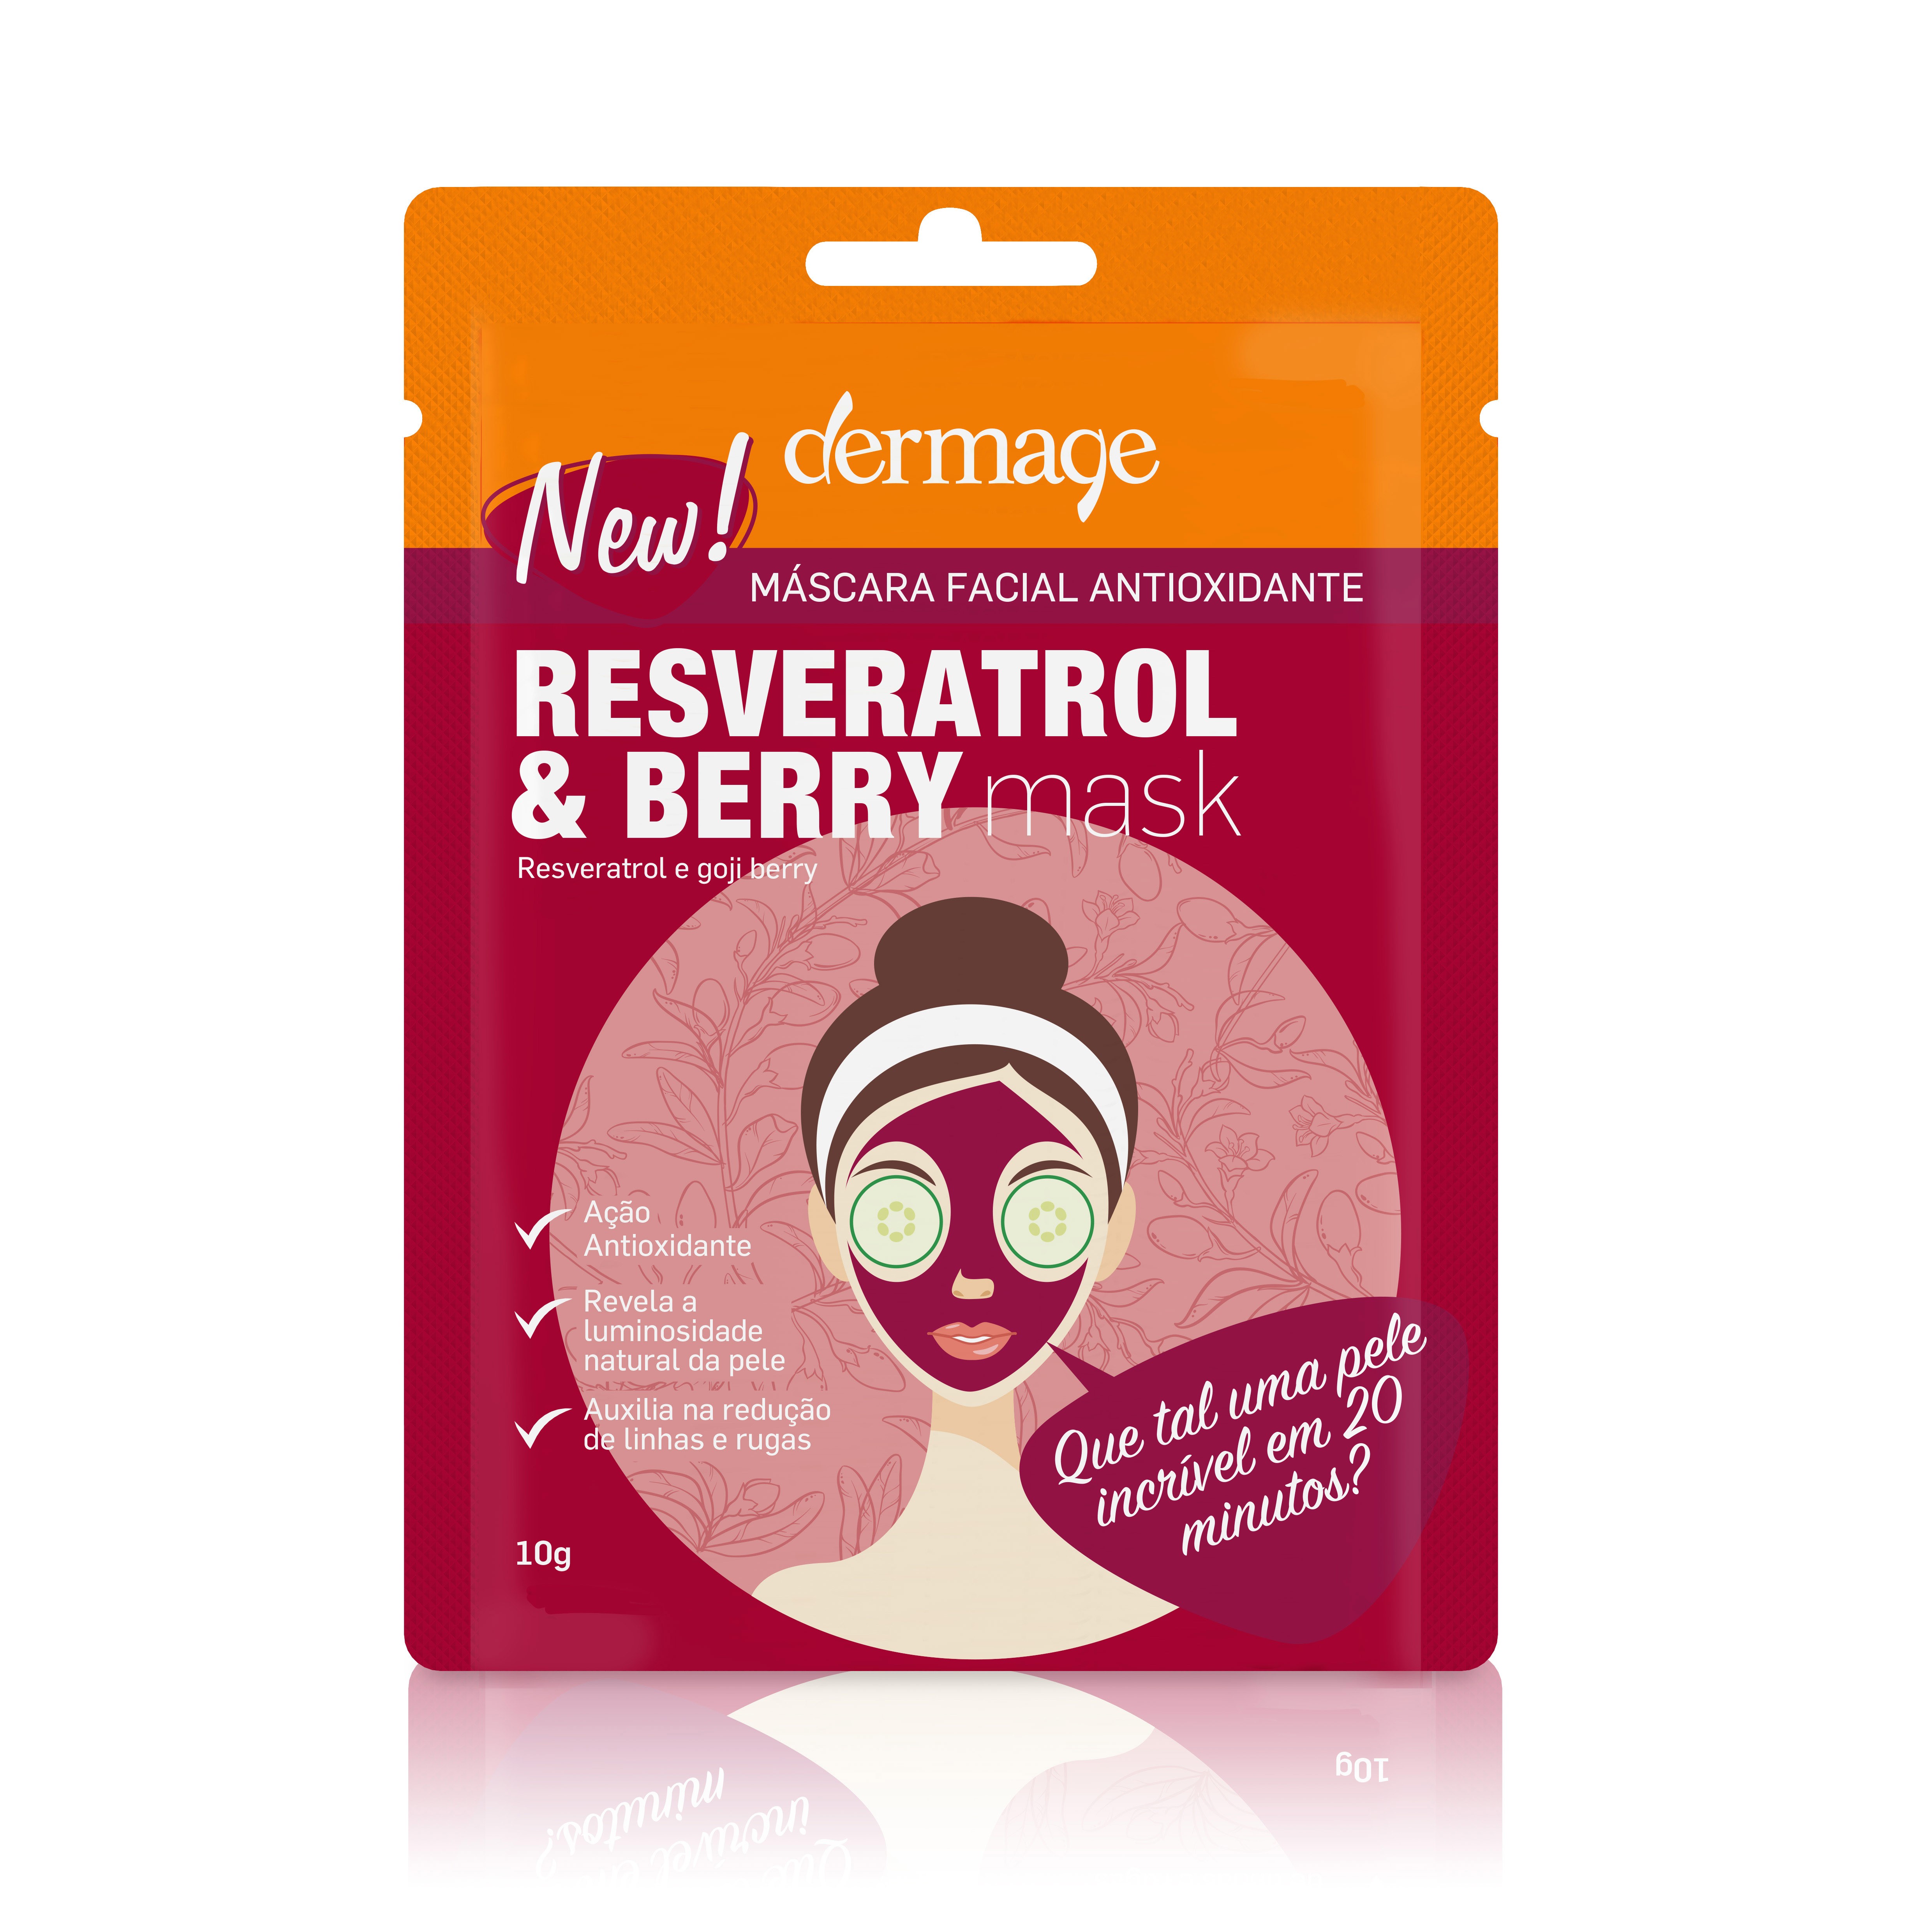 Máscara facial antioxidante Resveratrol e Berry Mask, Dermage (Foto: Divulgação)